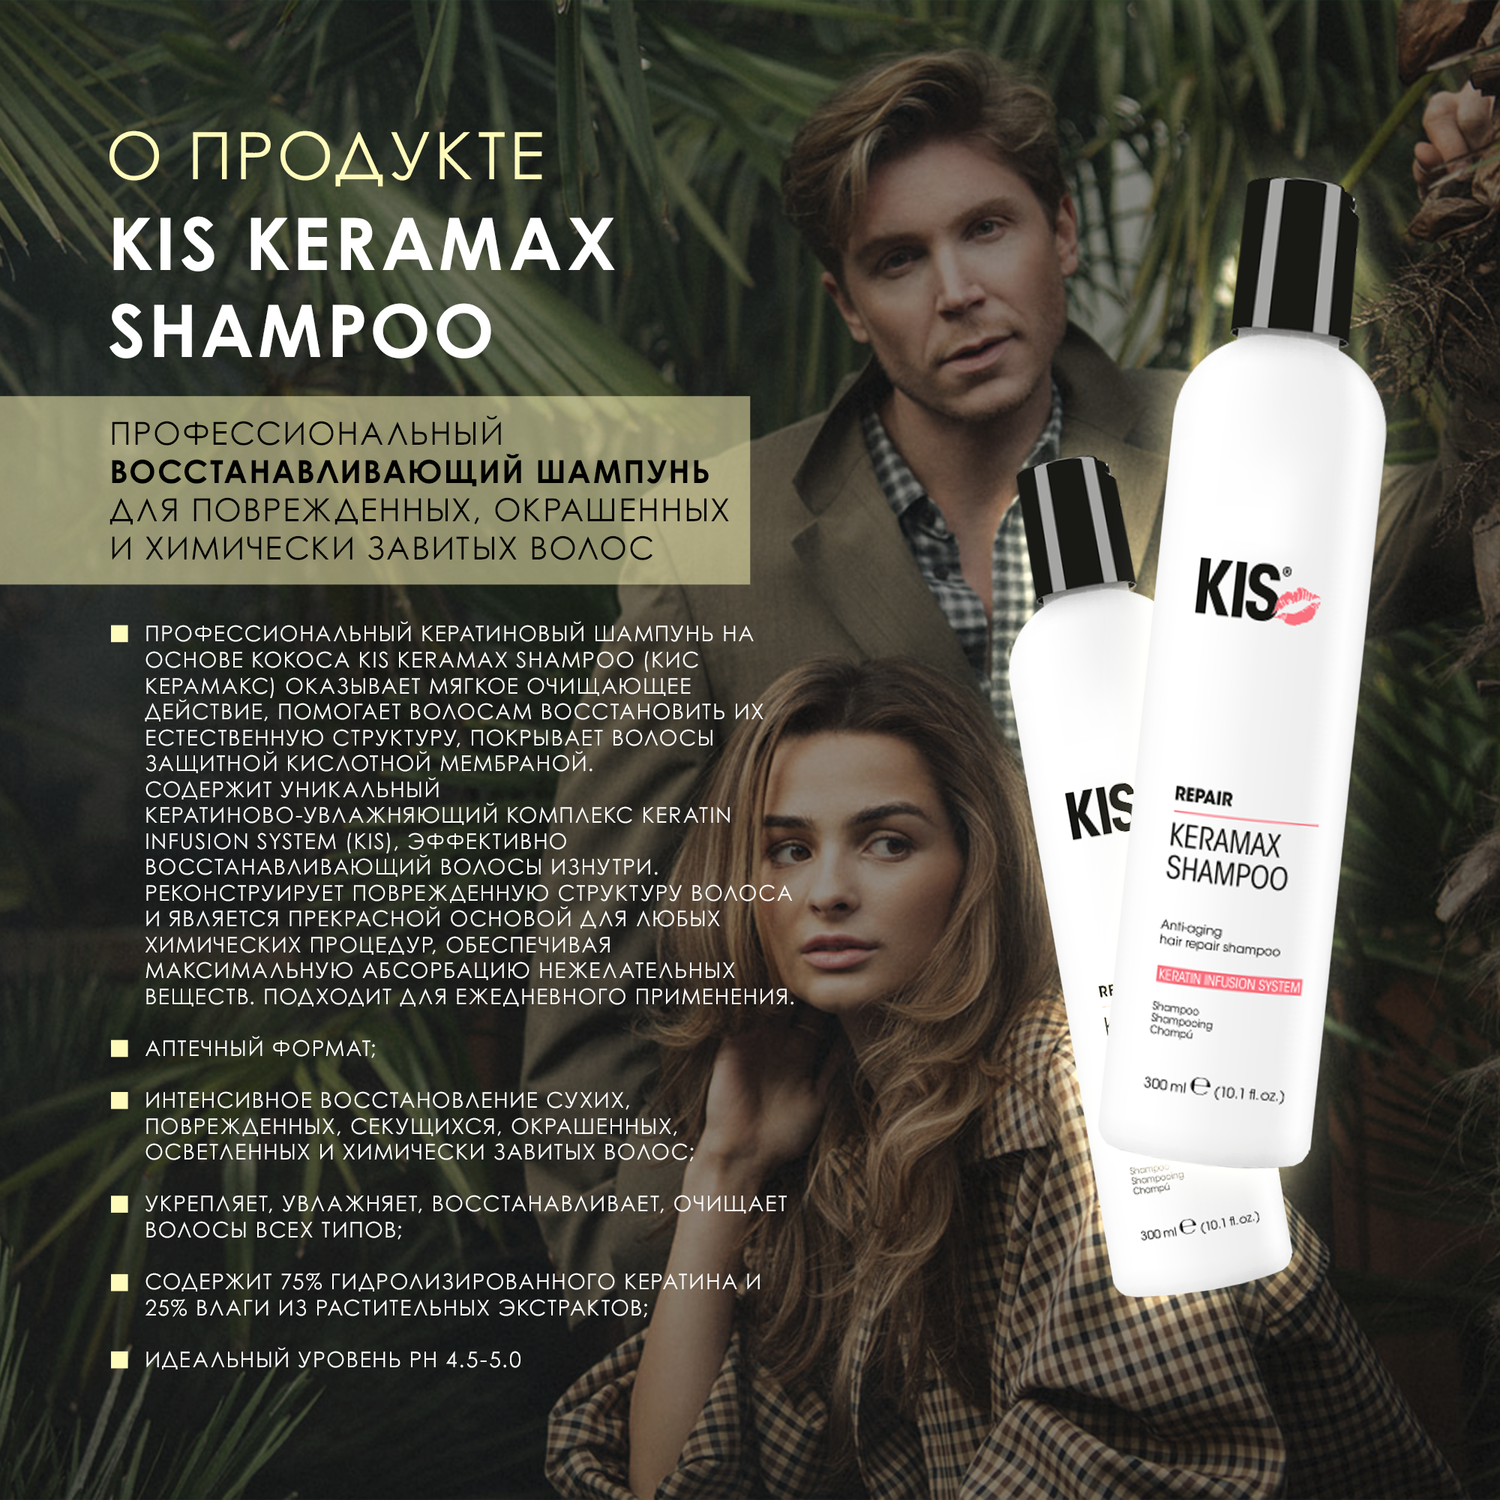 Шампунь KIS KeraMax Shampoo - профессиональный кератиновый восстанавливающий шампунь - фото 2